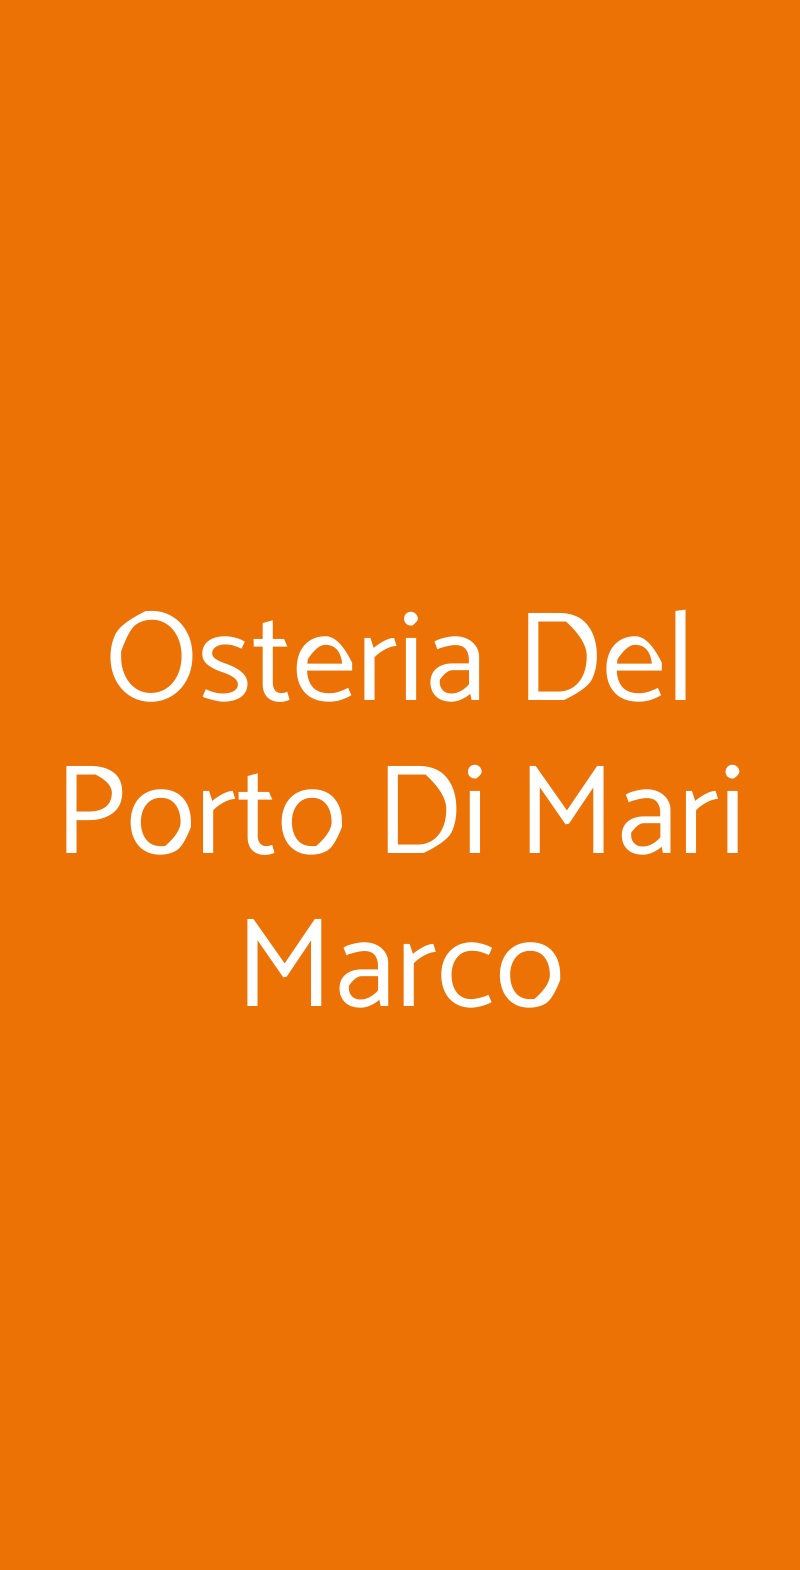 Osteria Del Porto Di Mari Marco Misano Adriatico menù 1 pagina